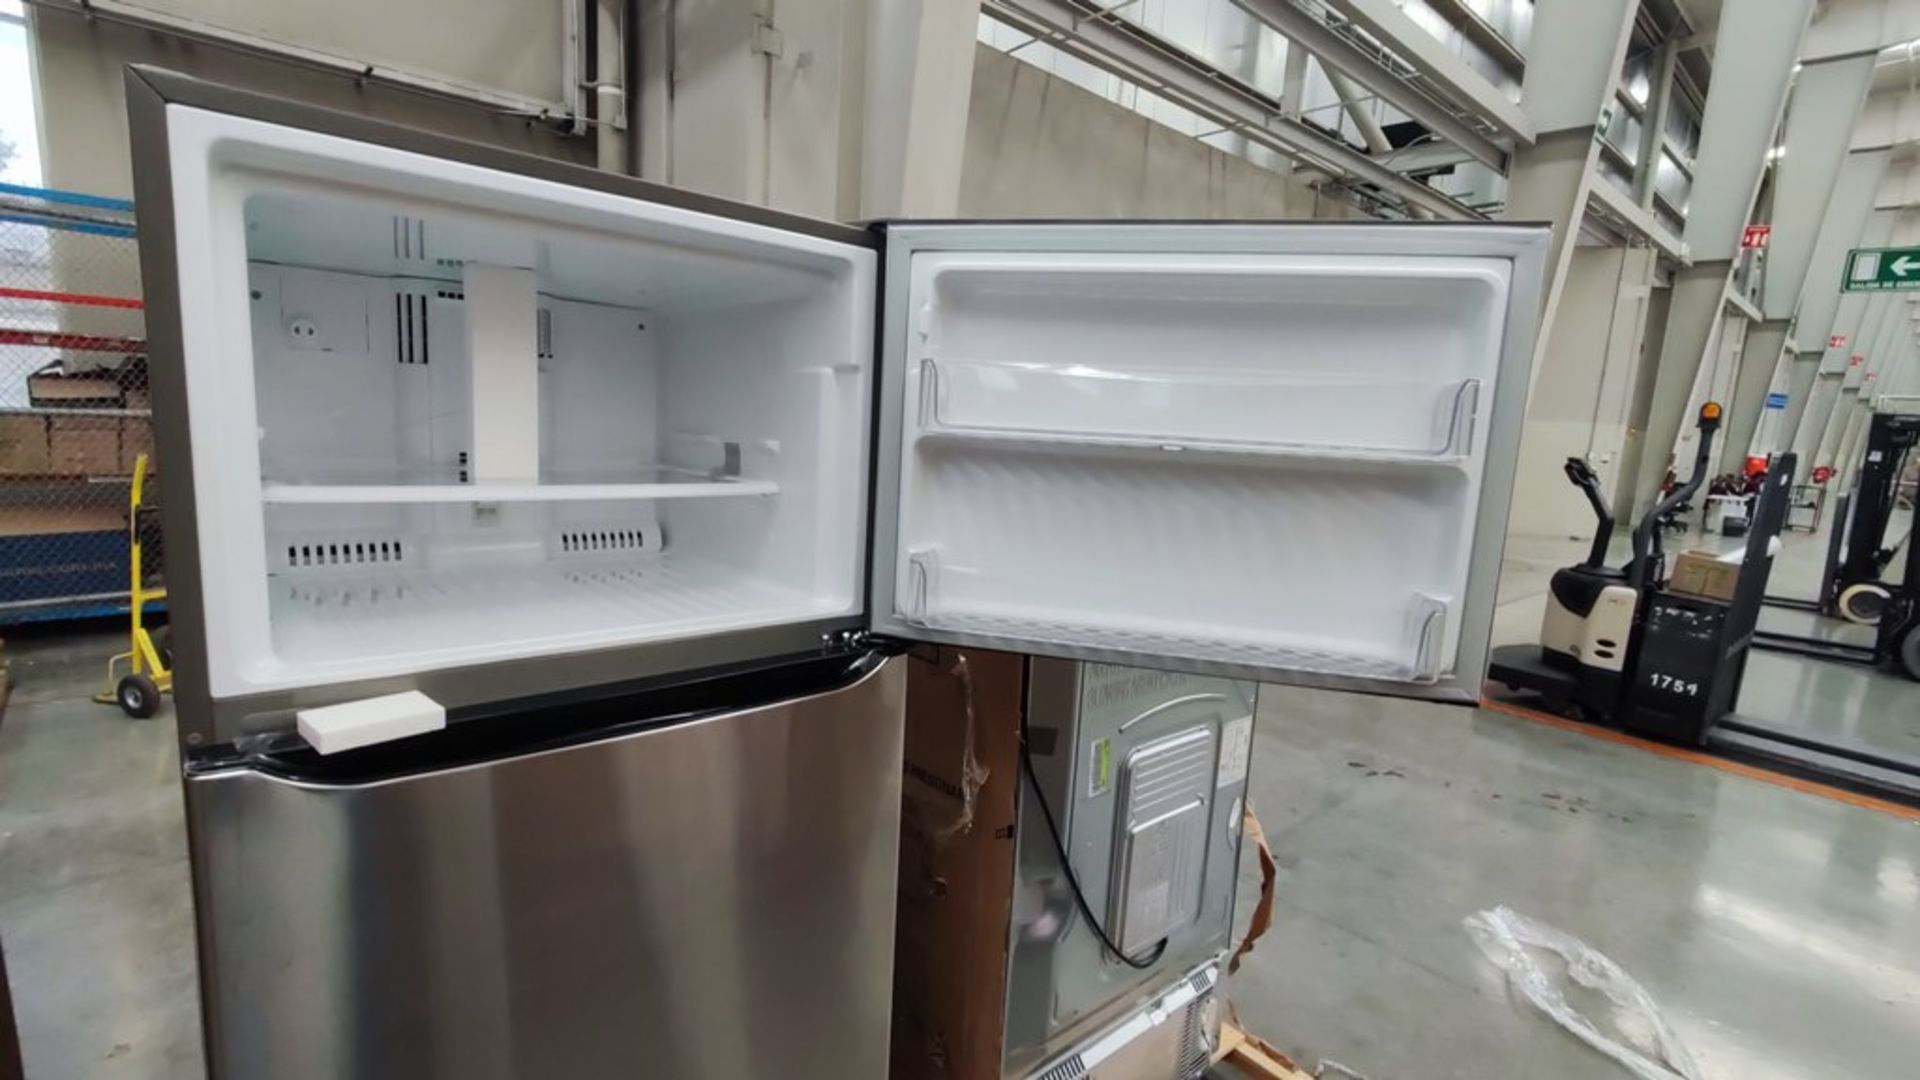 1 Refrigerador Marca LG, Modelo LT57BPSX, Serie 111MRXX34994, Color Gris, Favor de inspeccionar. (N - Image 8 of 11